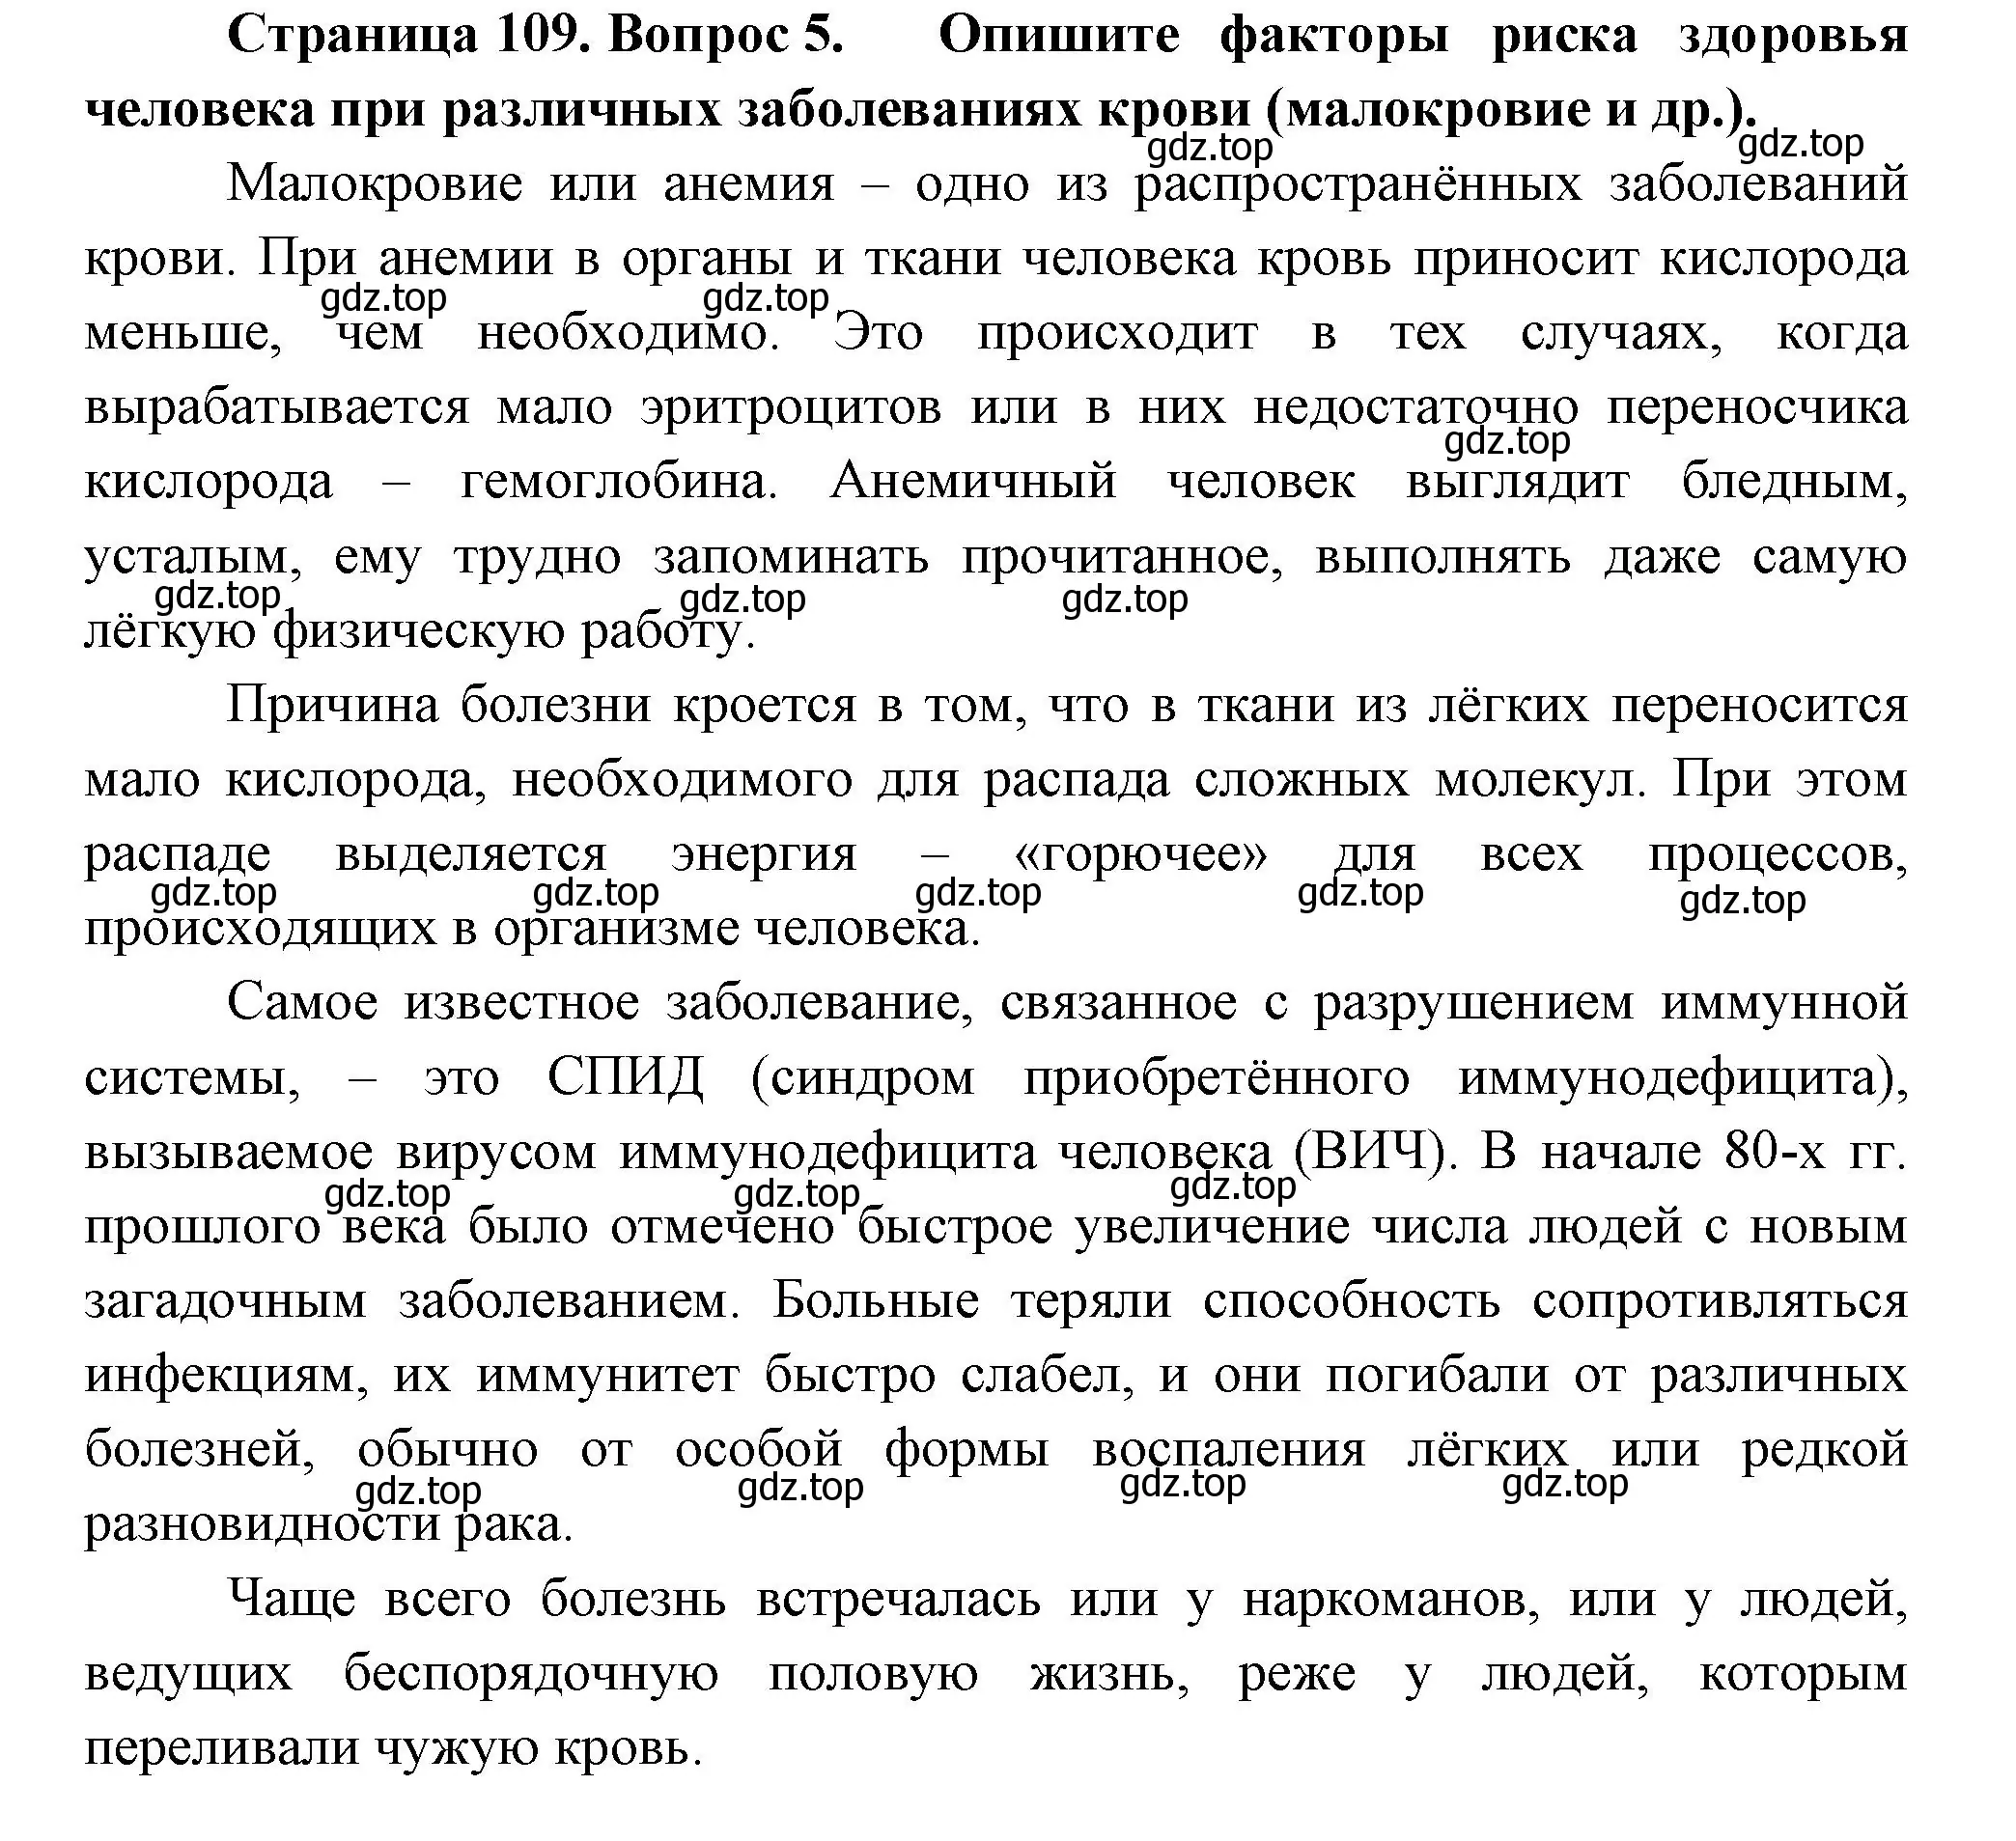 Решение номер 5 (страница 109) гдз по биологии 9 класс Пасечник, Каменский, учебник